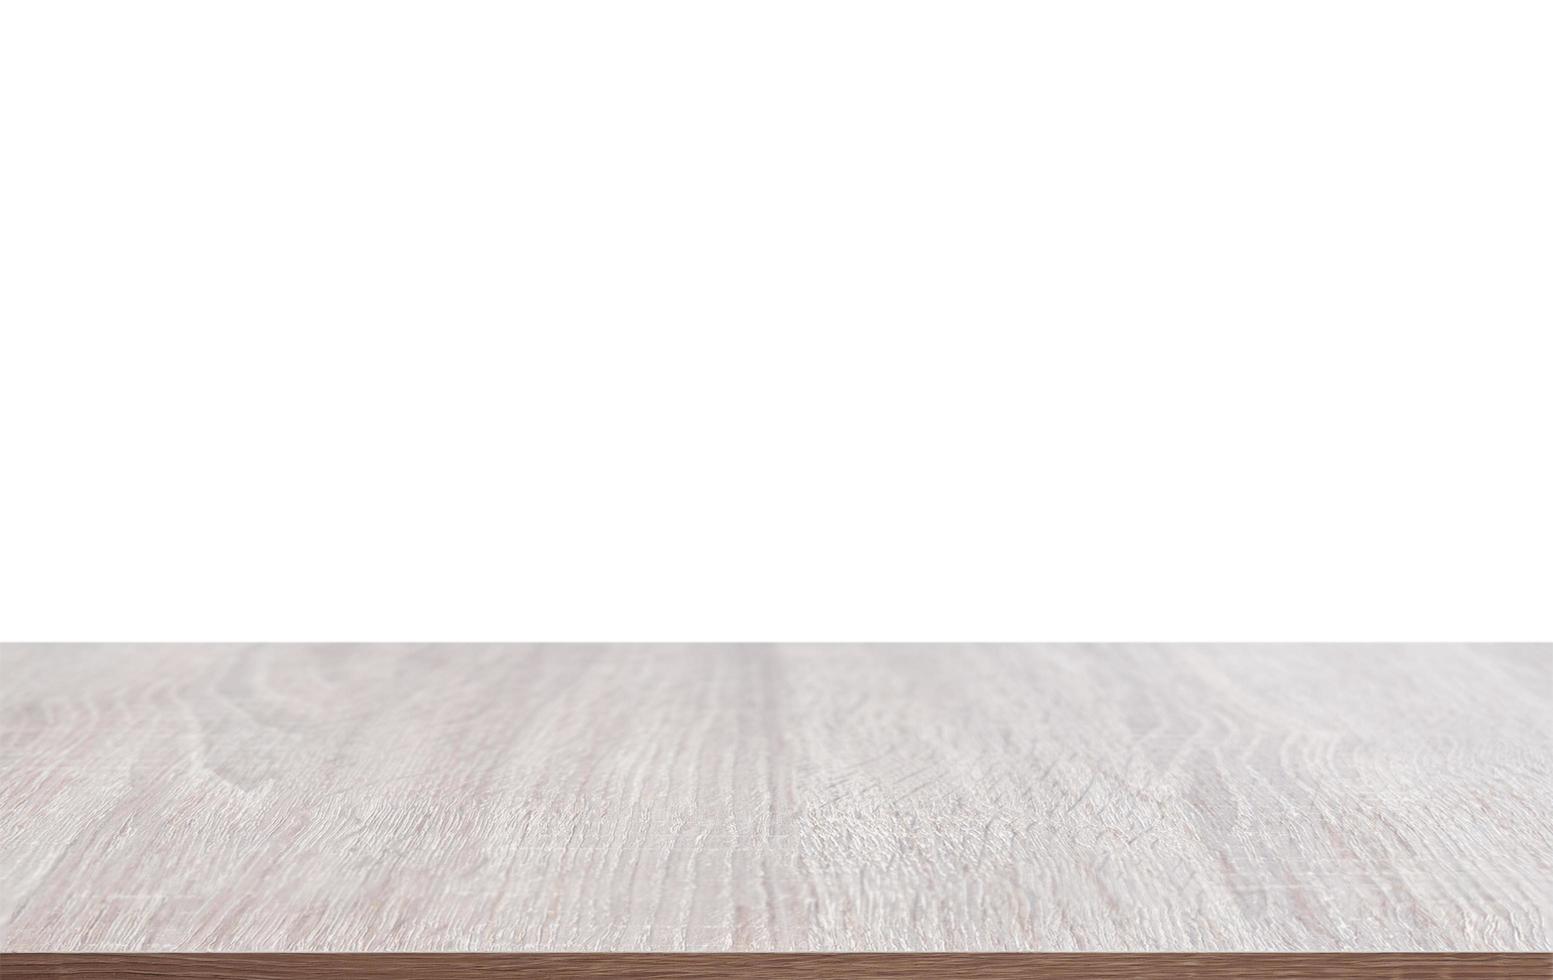 bordsskiva gjord av trä isolerad på vit bakgrund foto